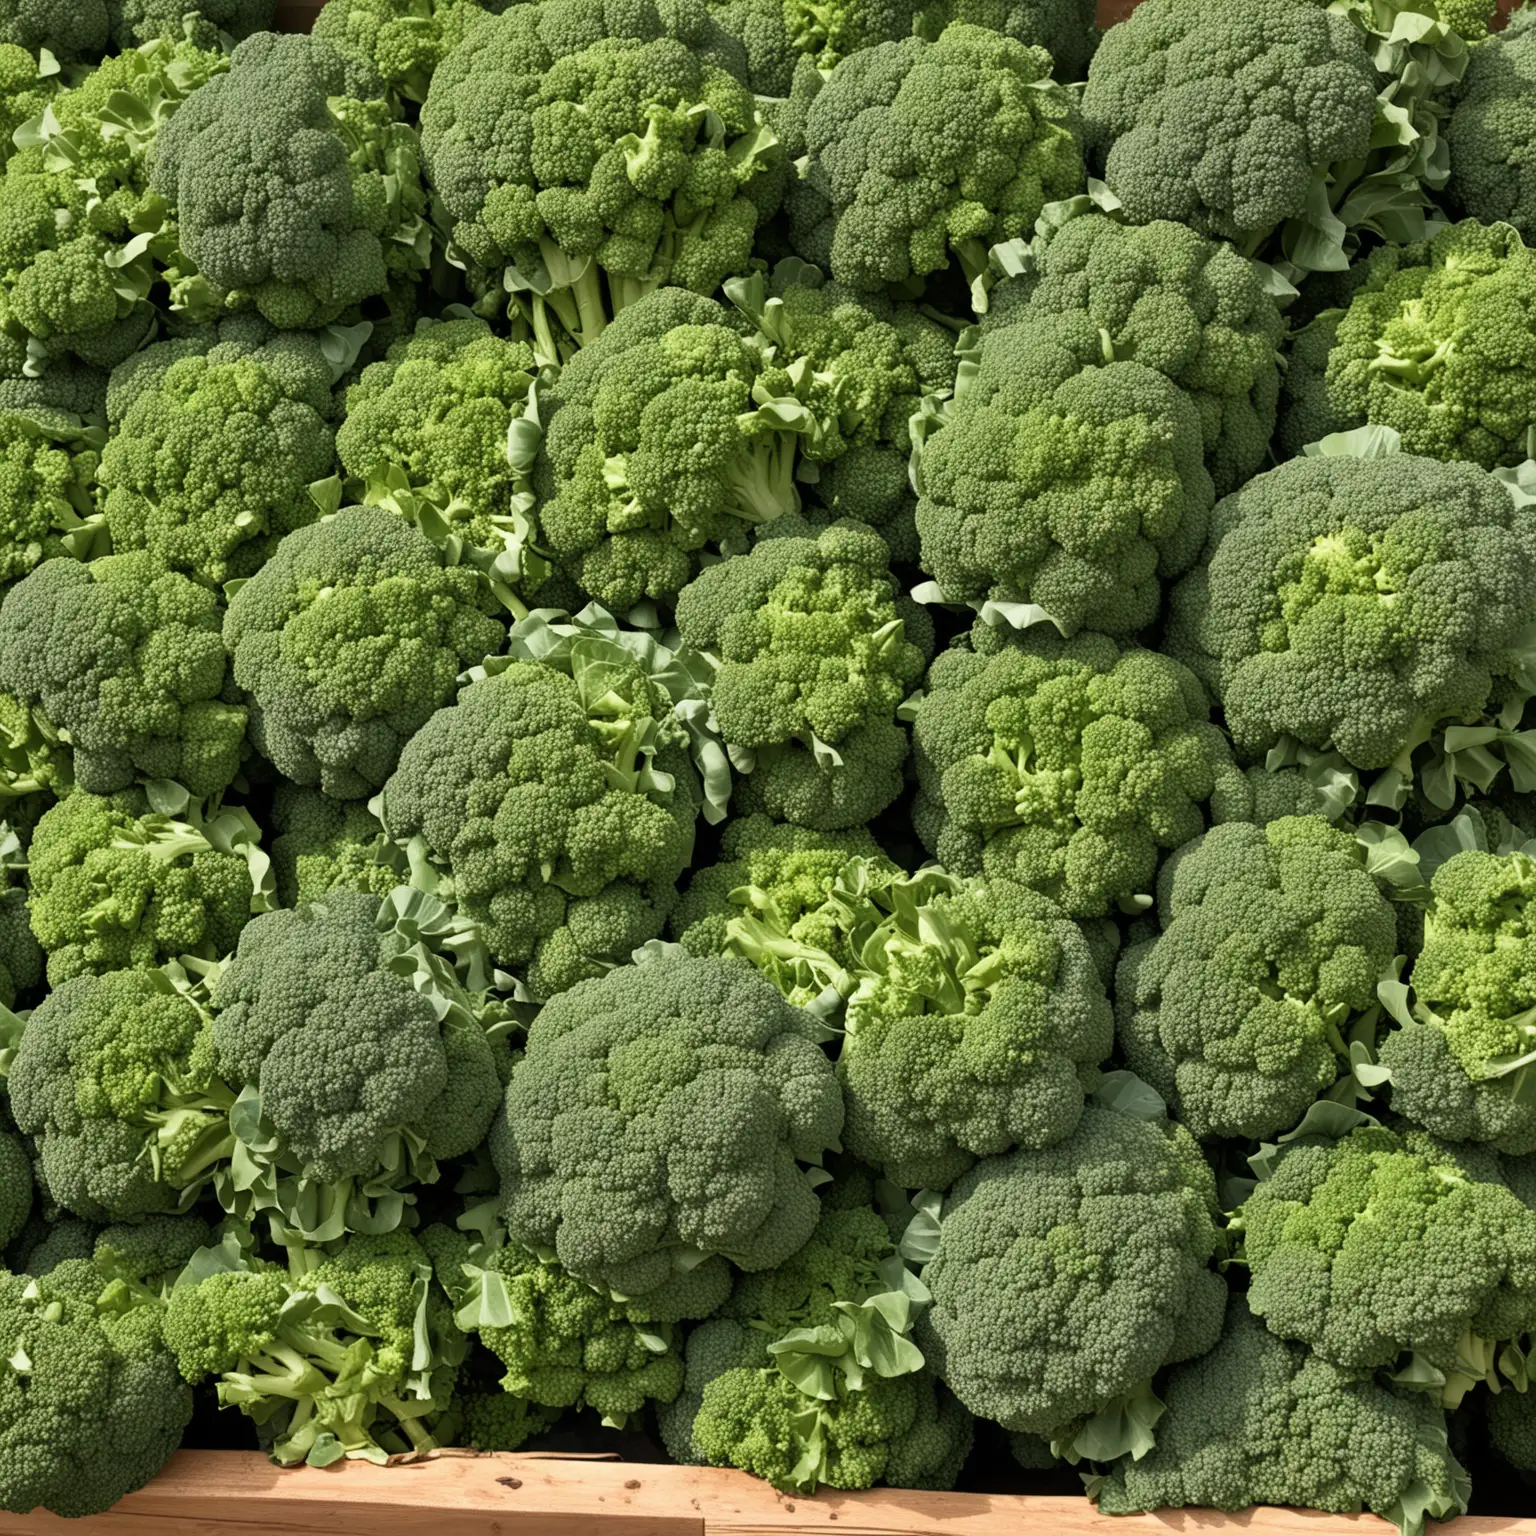 100 pounds of broccoli